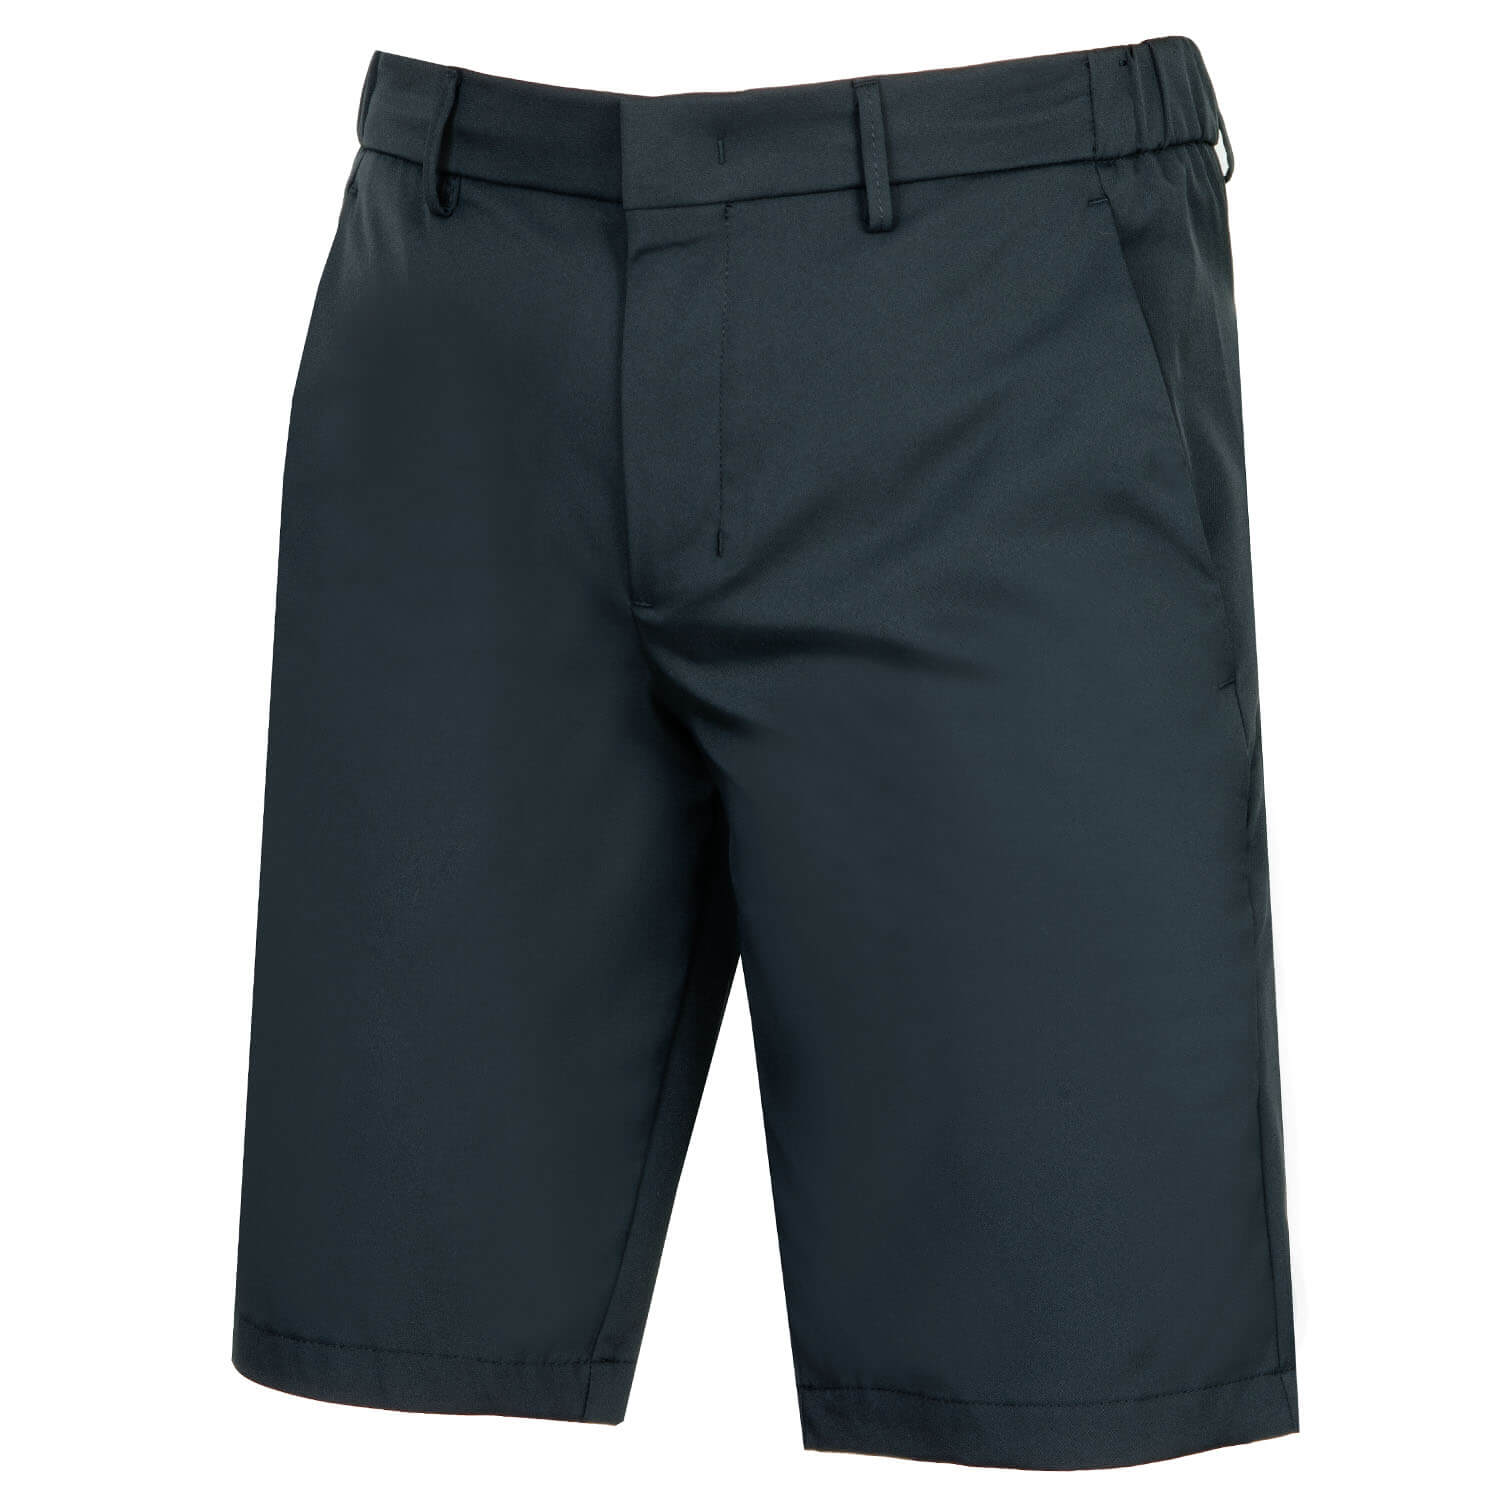 HUGO BOSS Litt Shorts Black | Scottsdale Golf